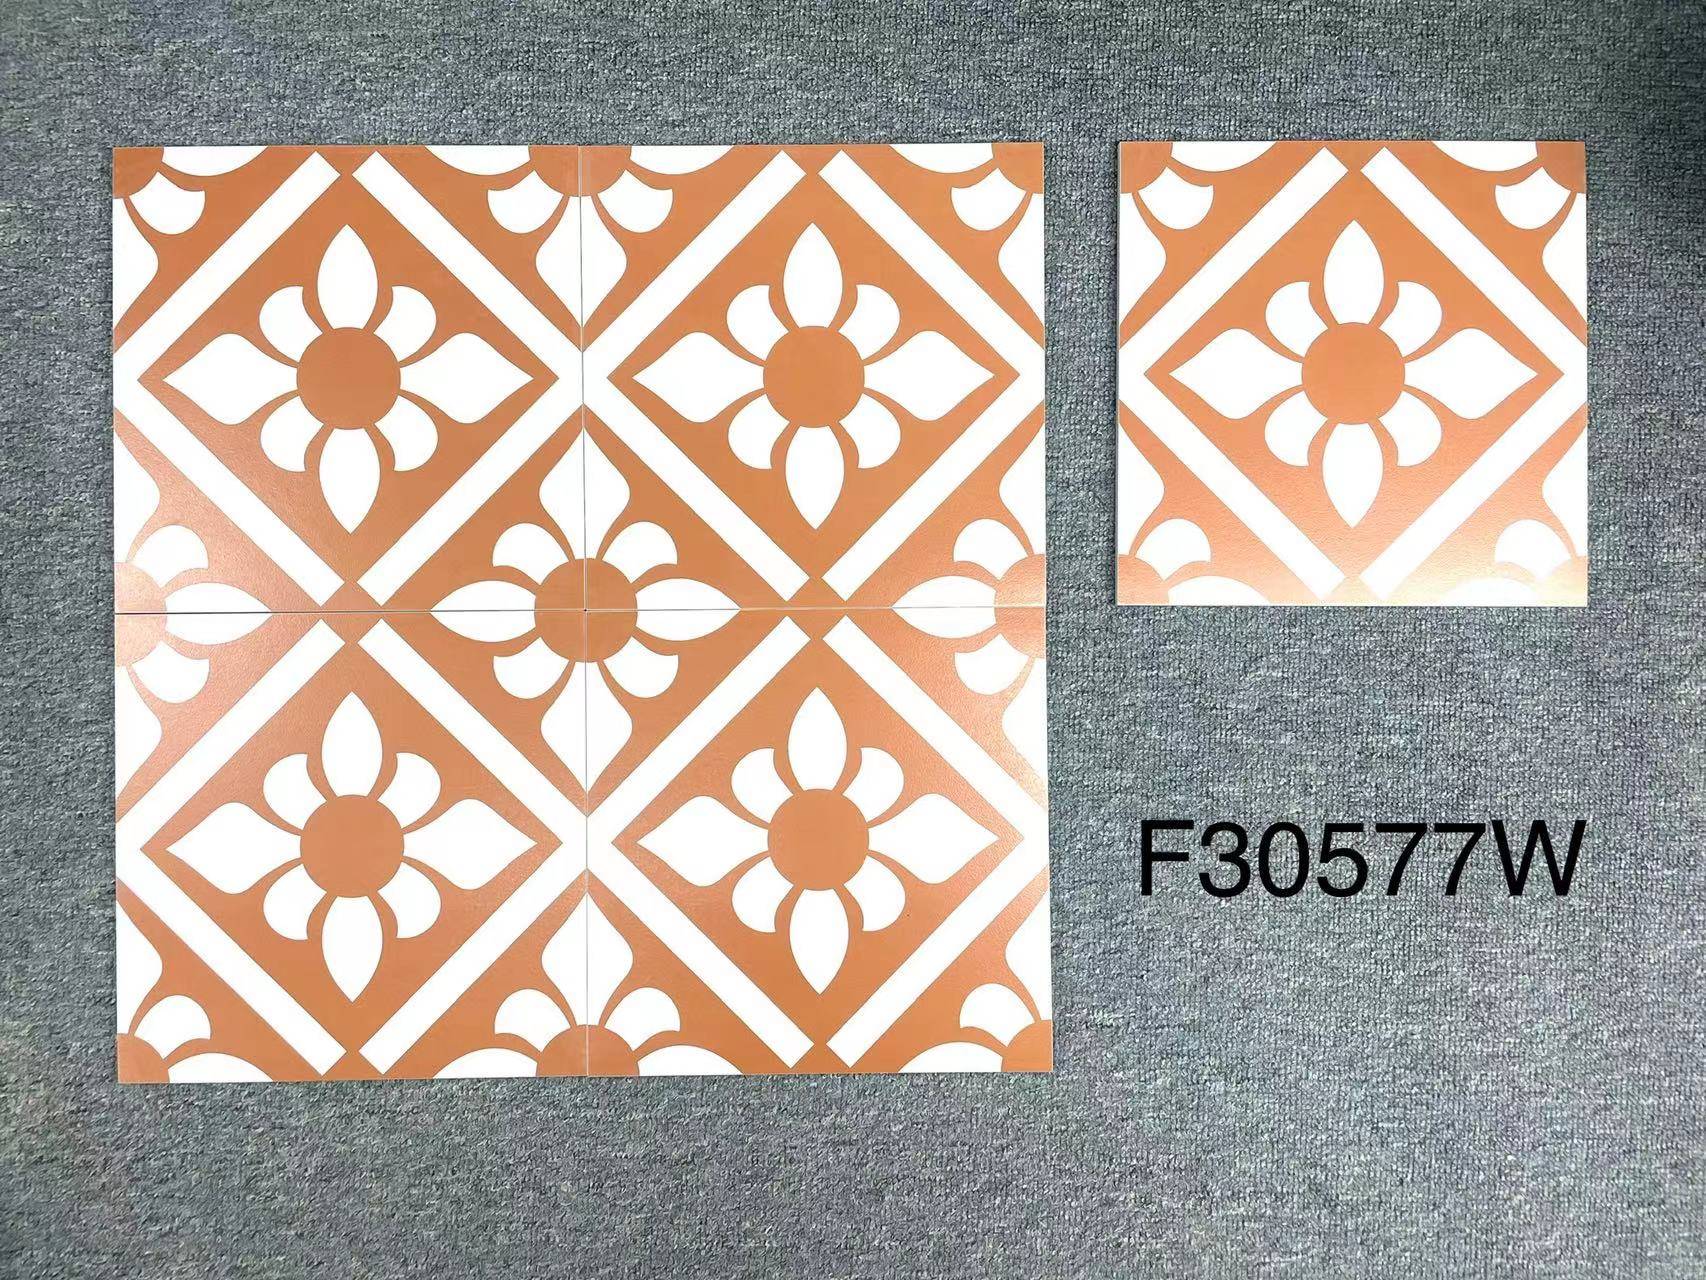 中國佛山瓷磚 China Foshan Tiles Encaustic Tiles 啞光地磚 牆磚F30557W F30558W F30559W F30577W花磚 裝飾磚 混裝發貨 隨機圖案 30×30cm